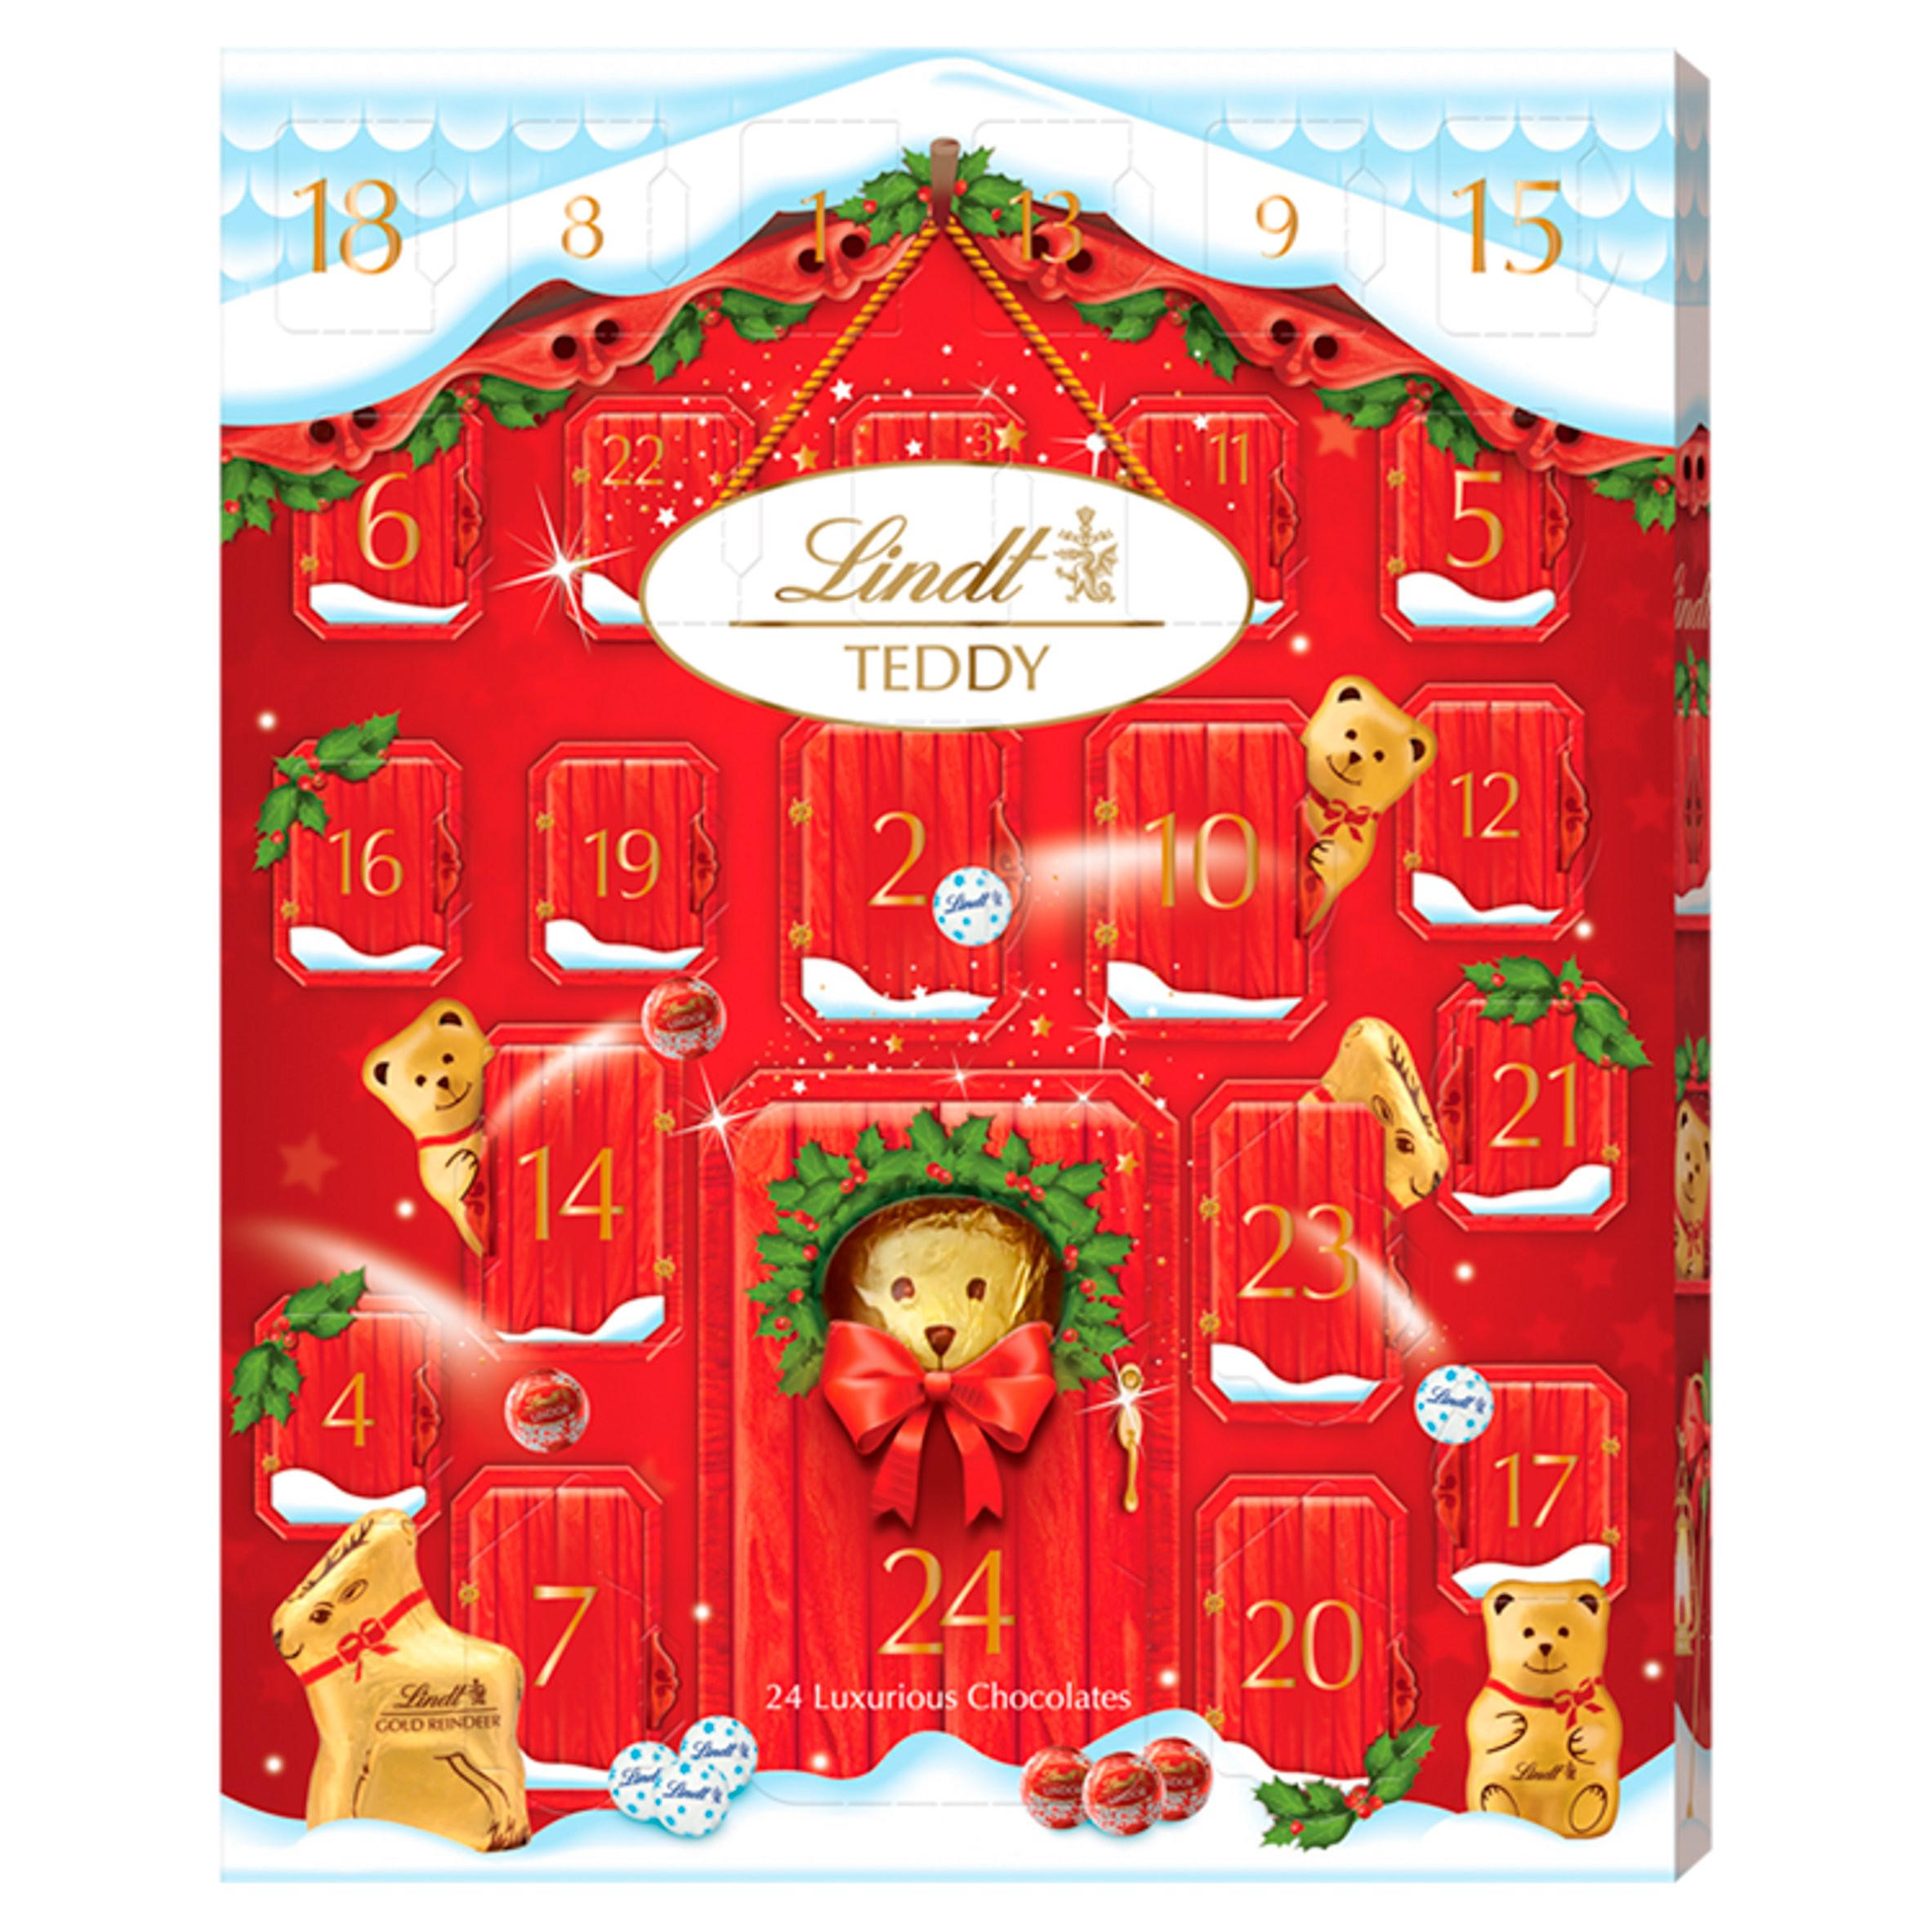 Lindt Teddy Chocolate Advent Calendar 250g Advent Calendars Iceland